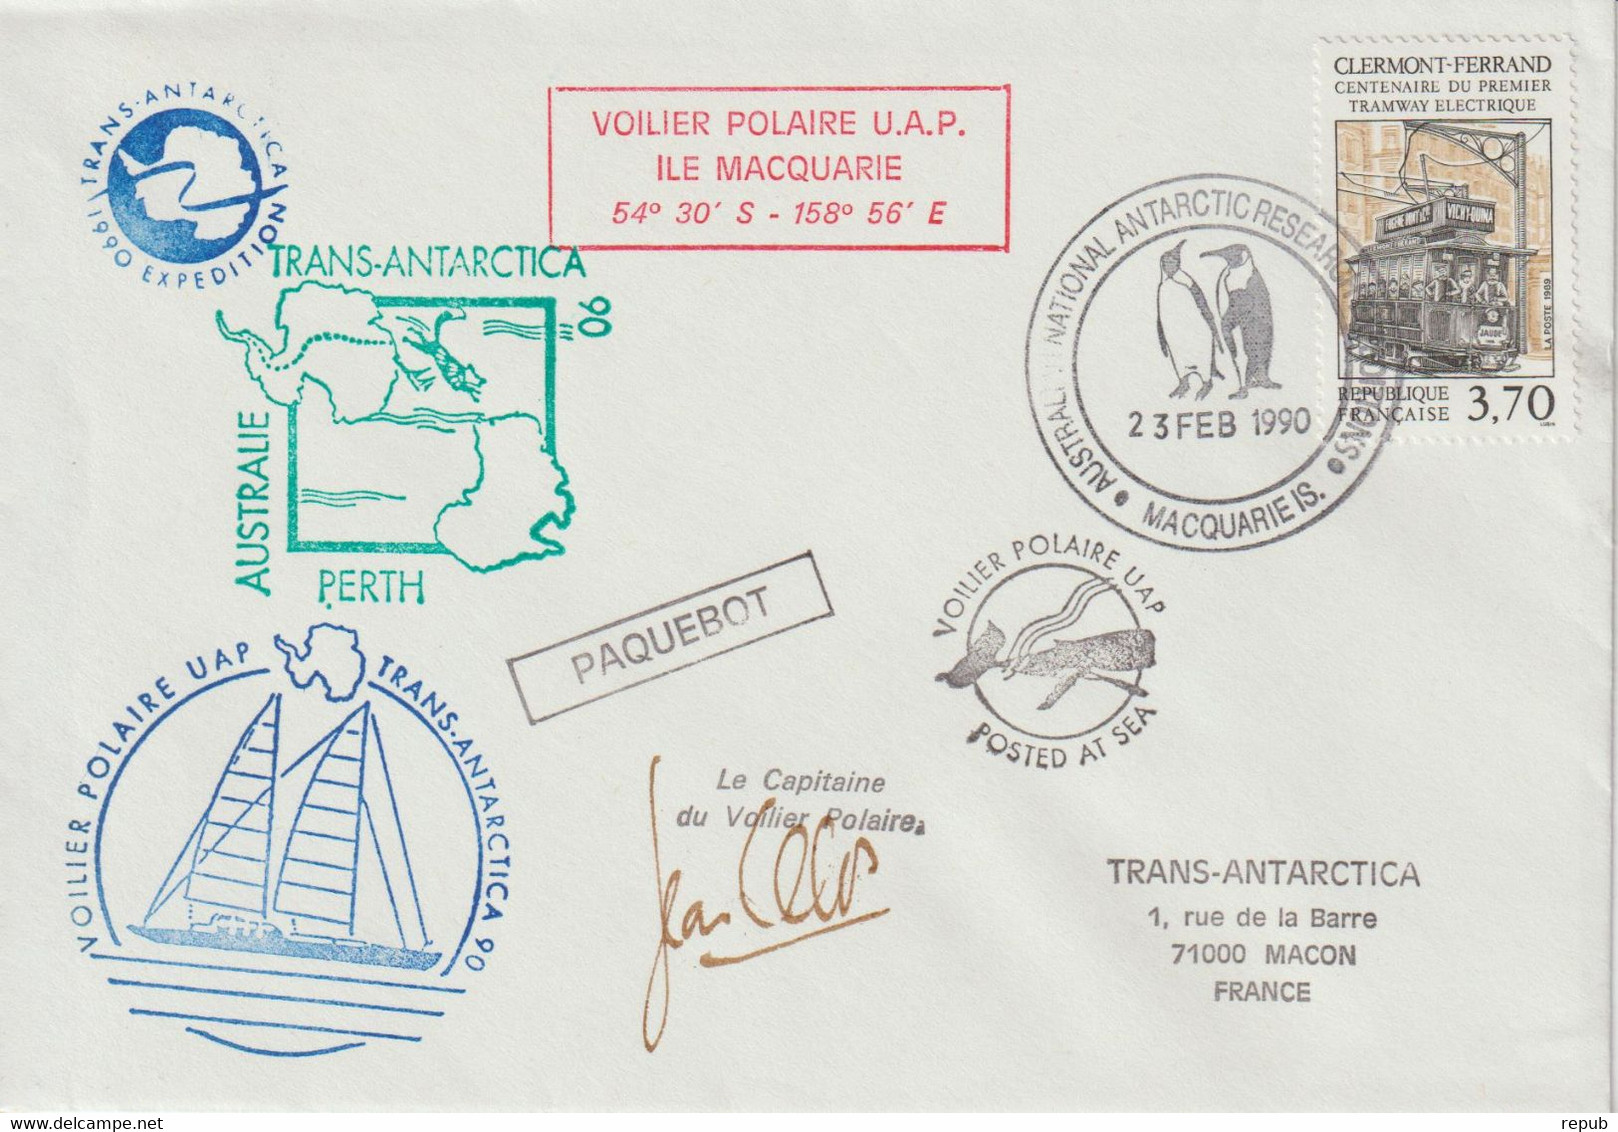 France 1990 Mission Trans Antartica 90 Escale Australie - Poste Maritime